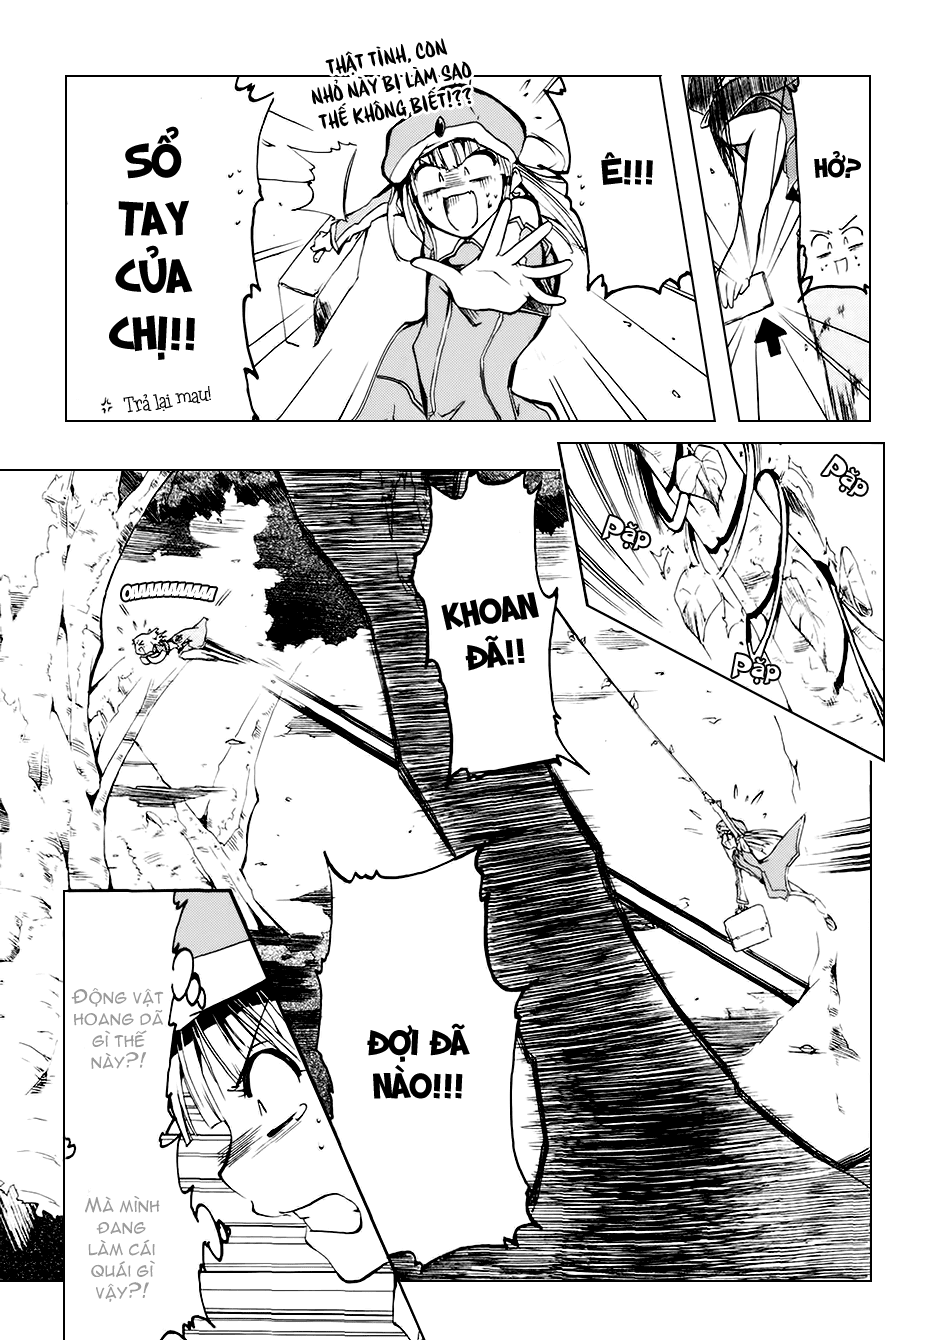 [Manga]: Esprit 0031